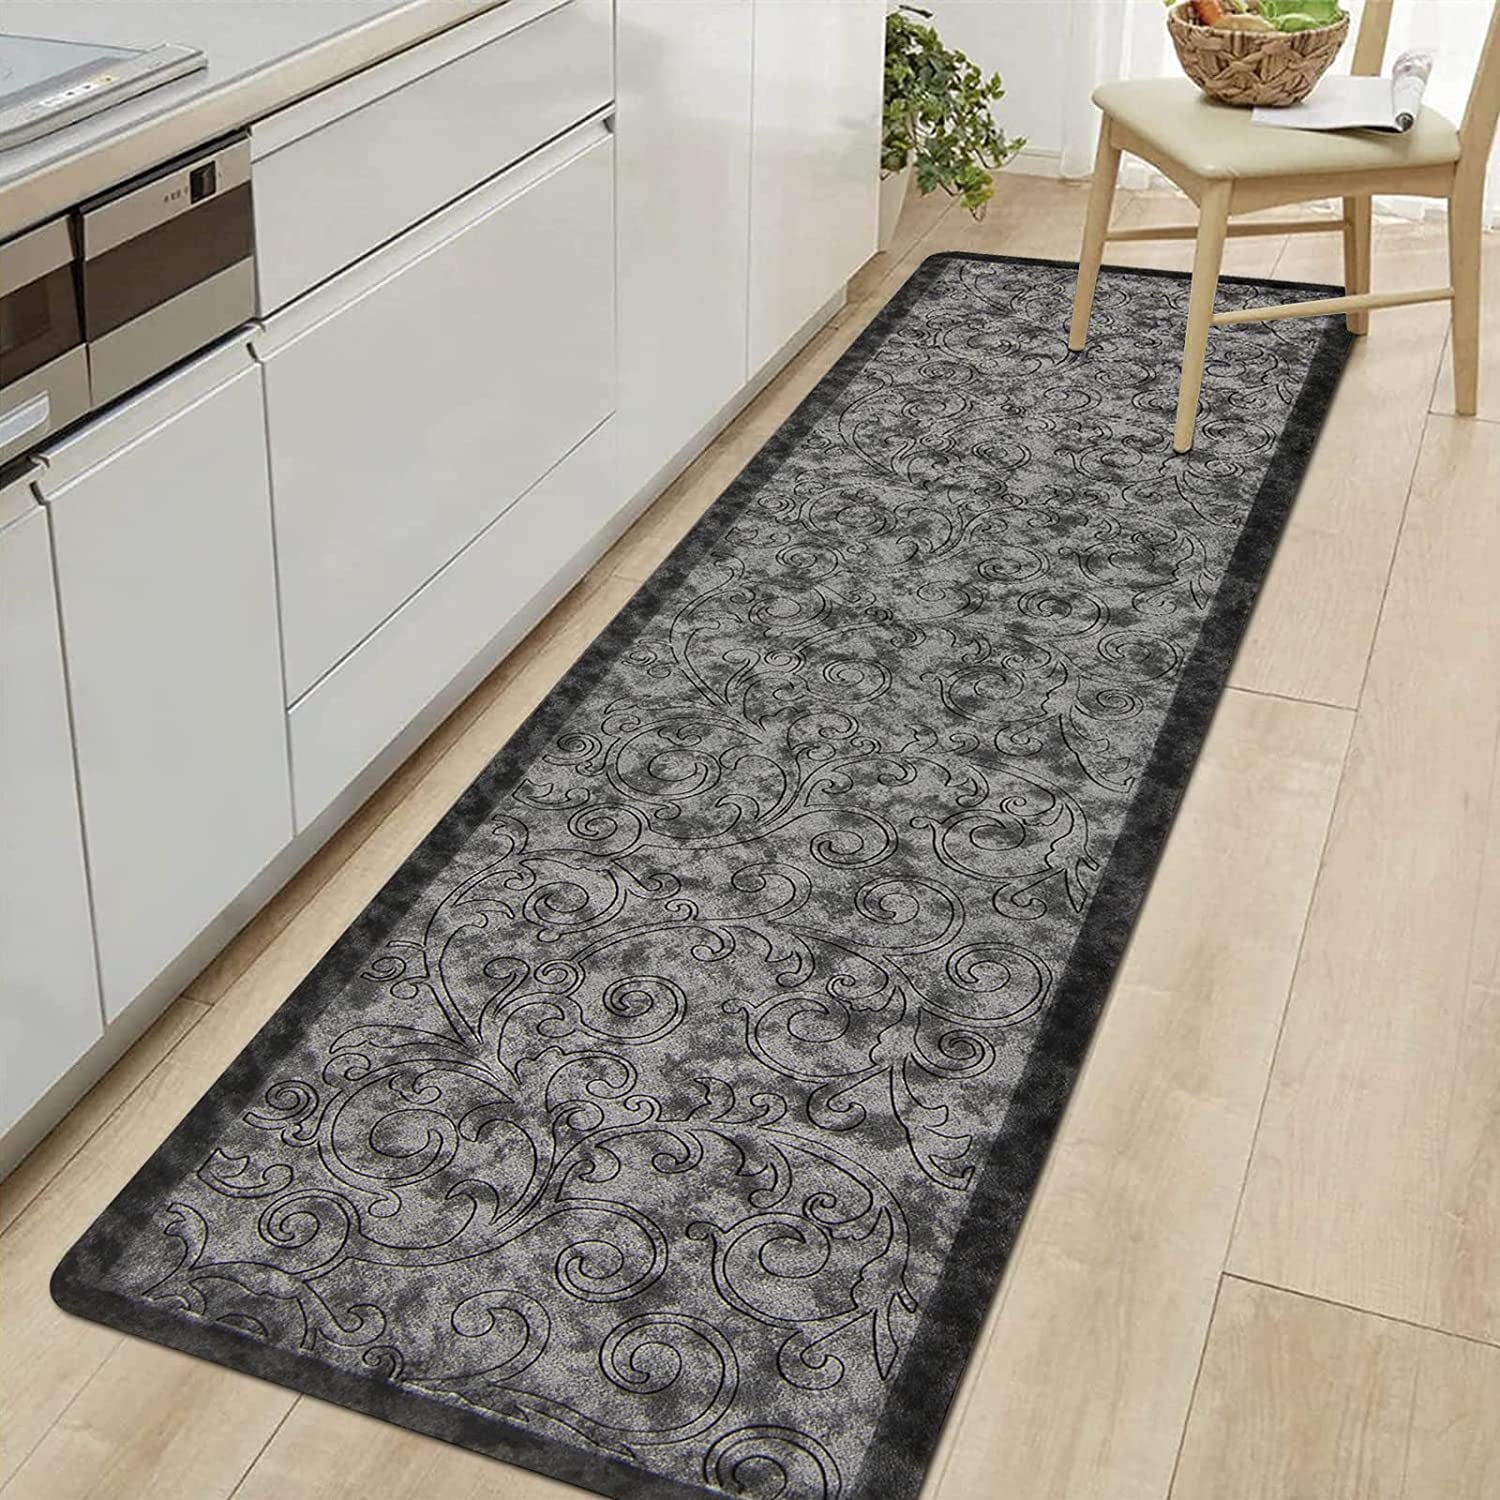 Kitchen Area NonSlip Rug Floor Mat Door Entrance Carpet Runner Flowers 